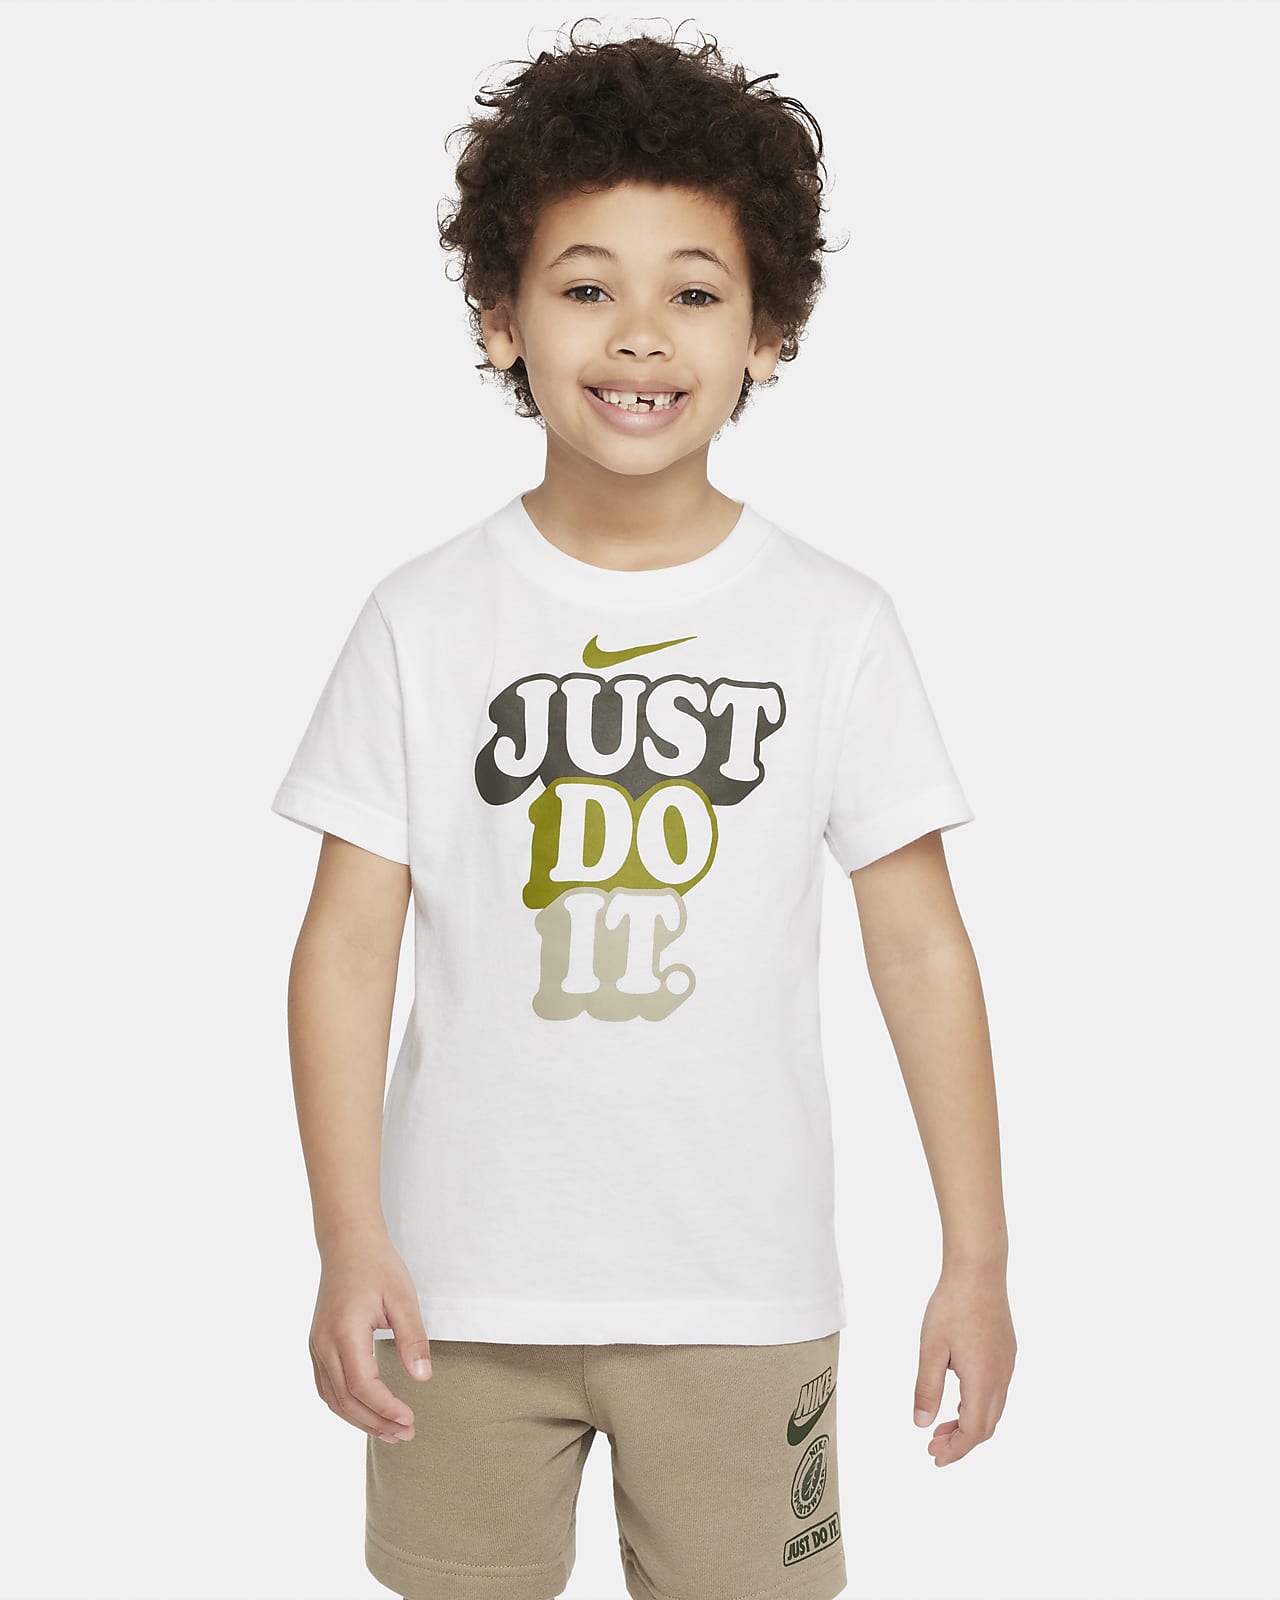 ナイキ "Just Do It" キャンプ Tシャツ リトルキッズ Tシャツ